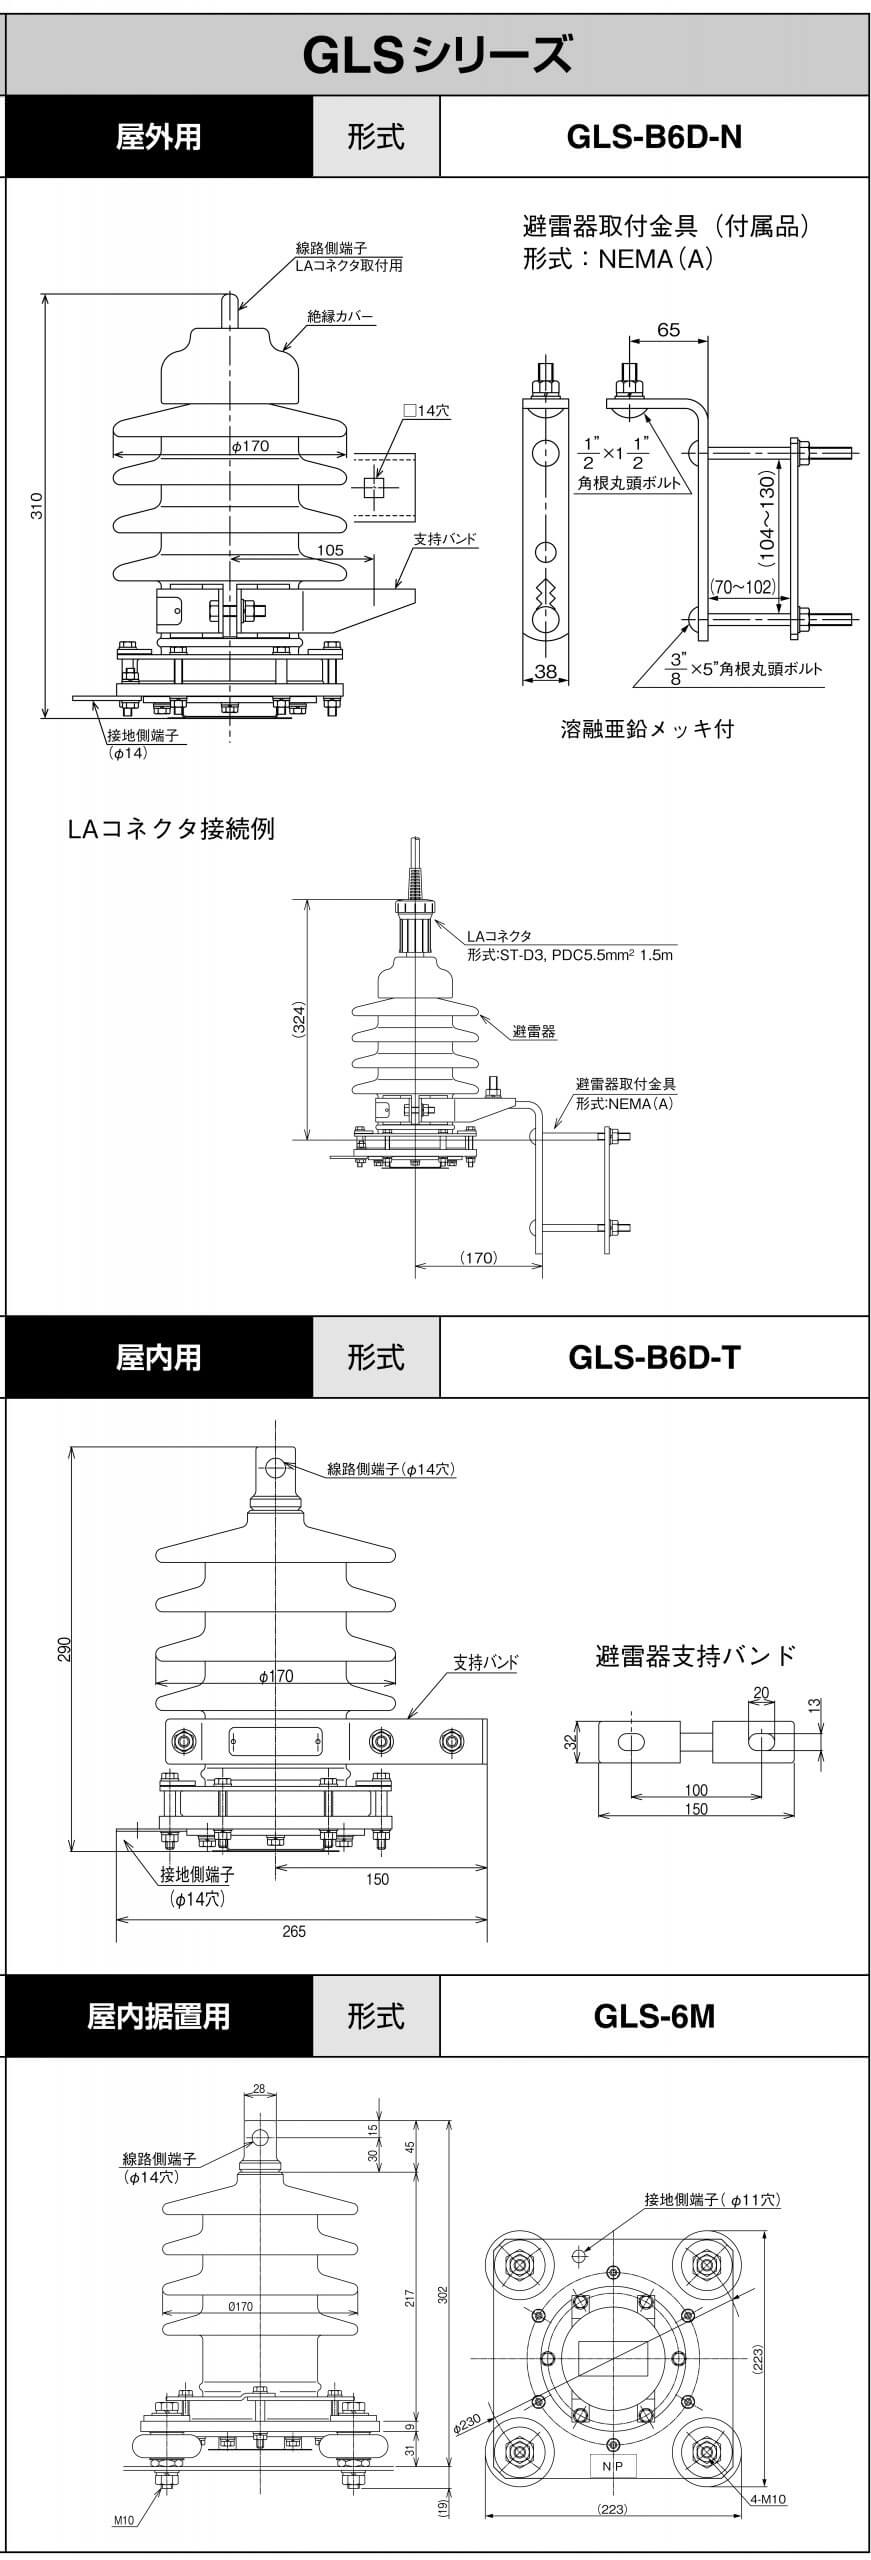 GLS-B6D-N, GLS-B6D-T, GLS-6M